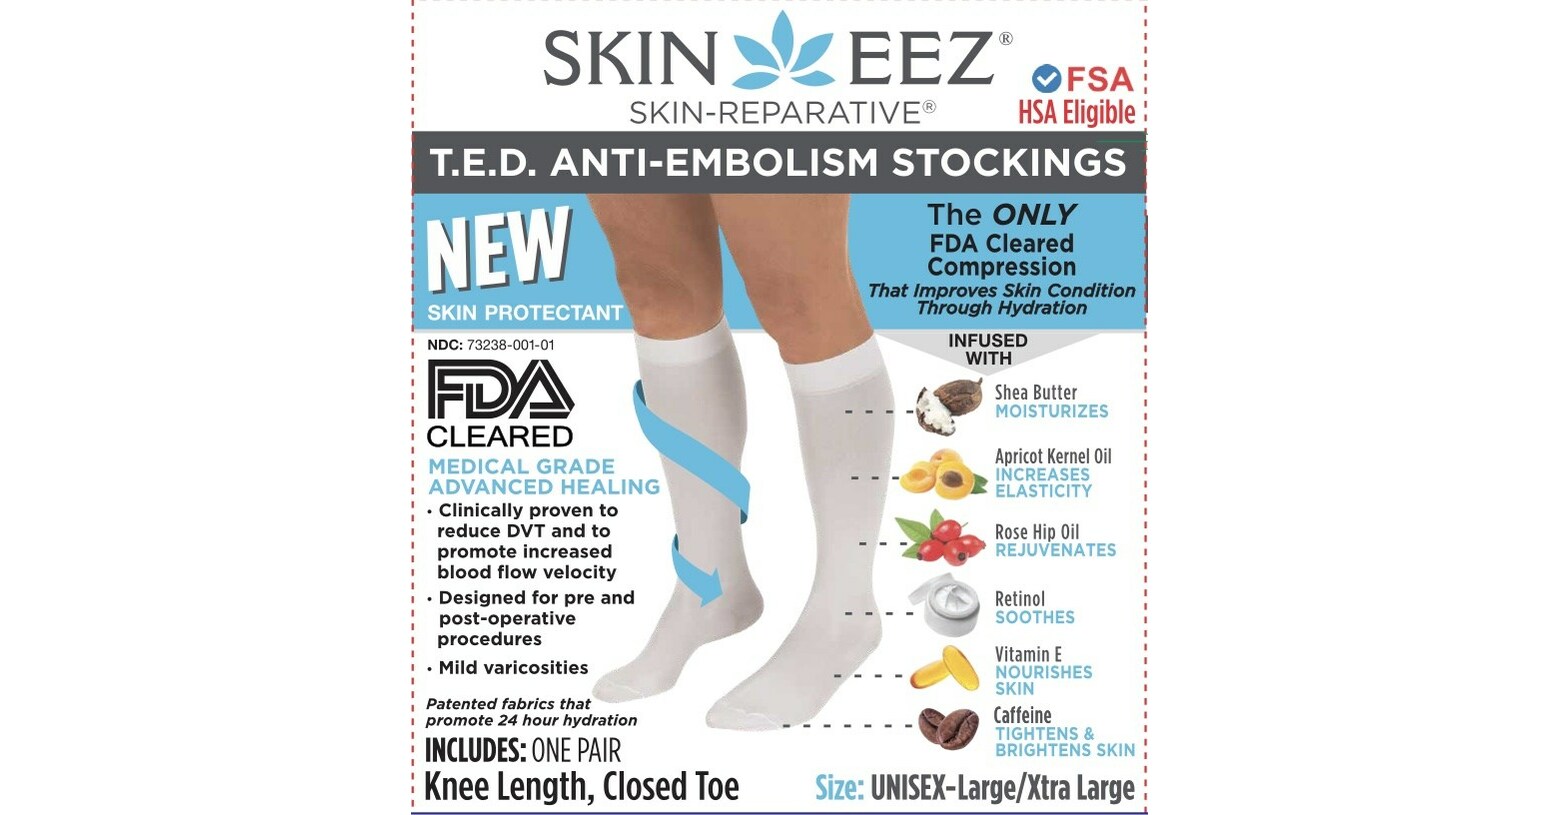 https://mma.prnewswire.com/media/2098102/skineez_FDA_Cleared.jpg?p=facebook